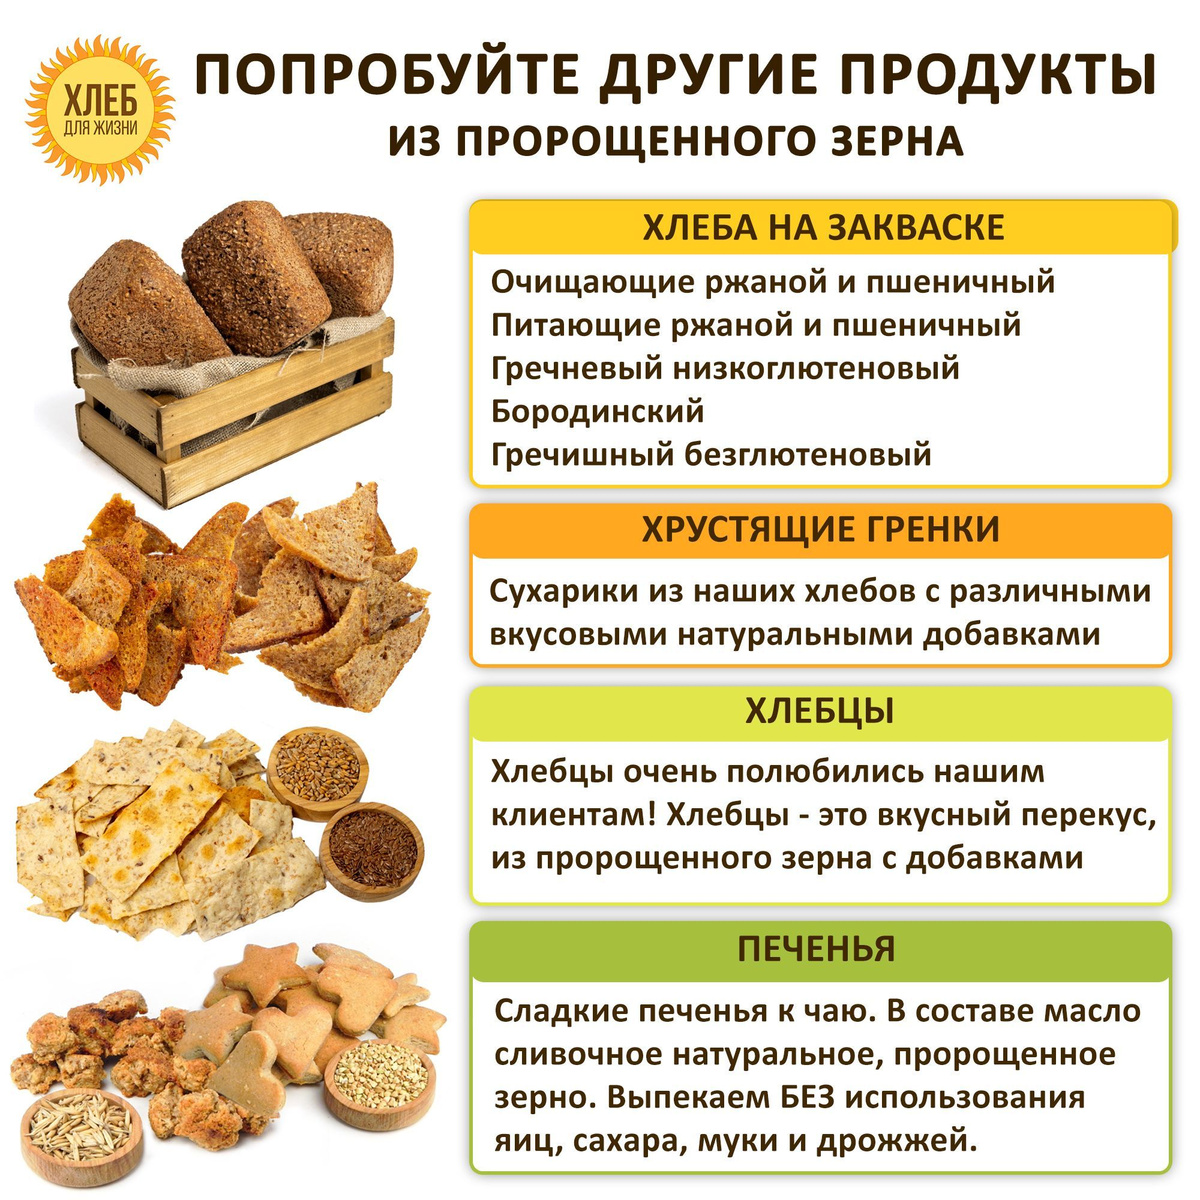 Продукты Хлеб для жизни